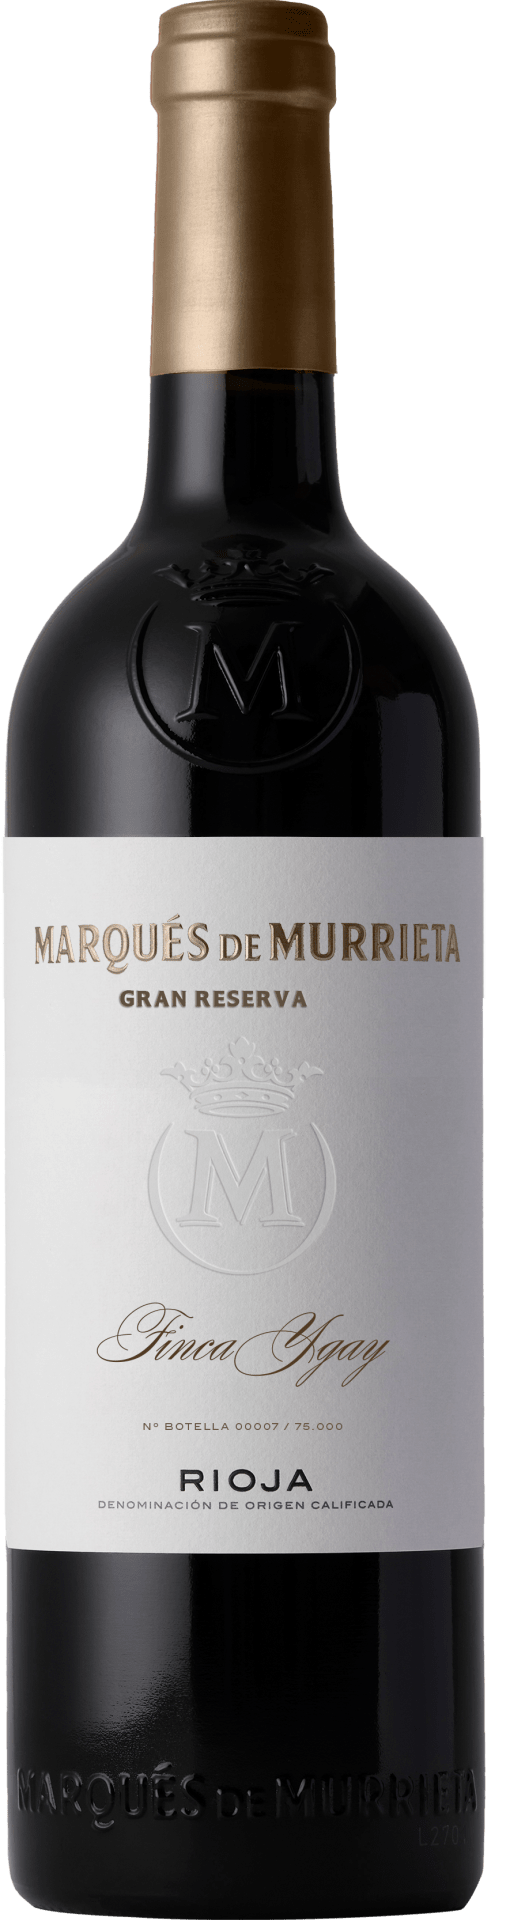 Marqués de Murrieta Gran Reserva 